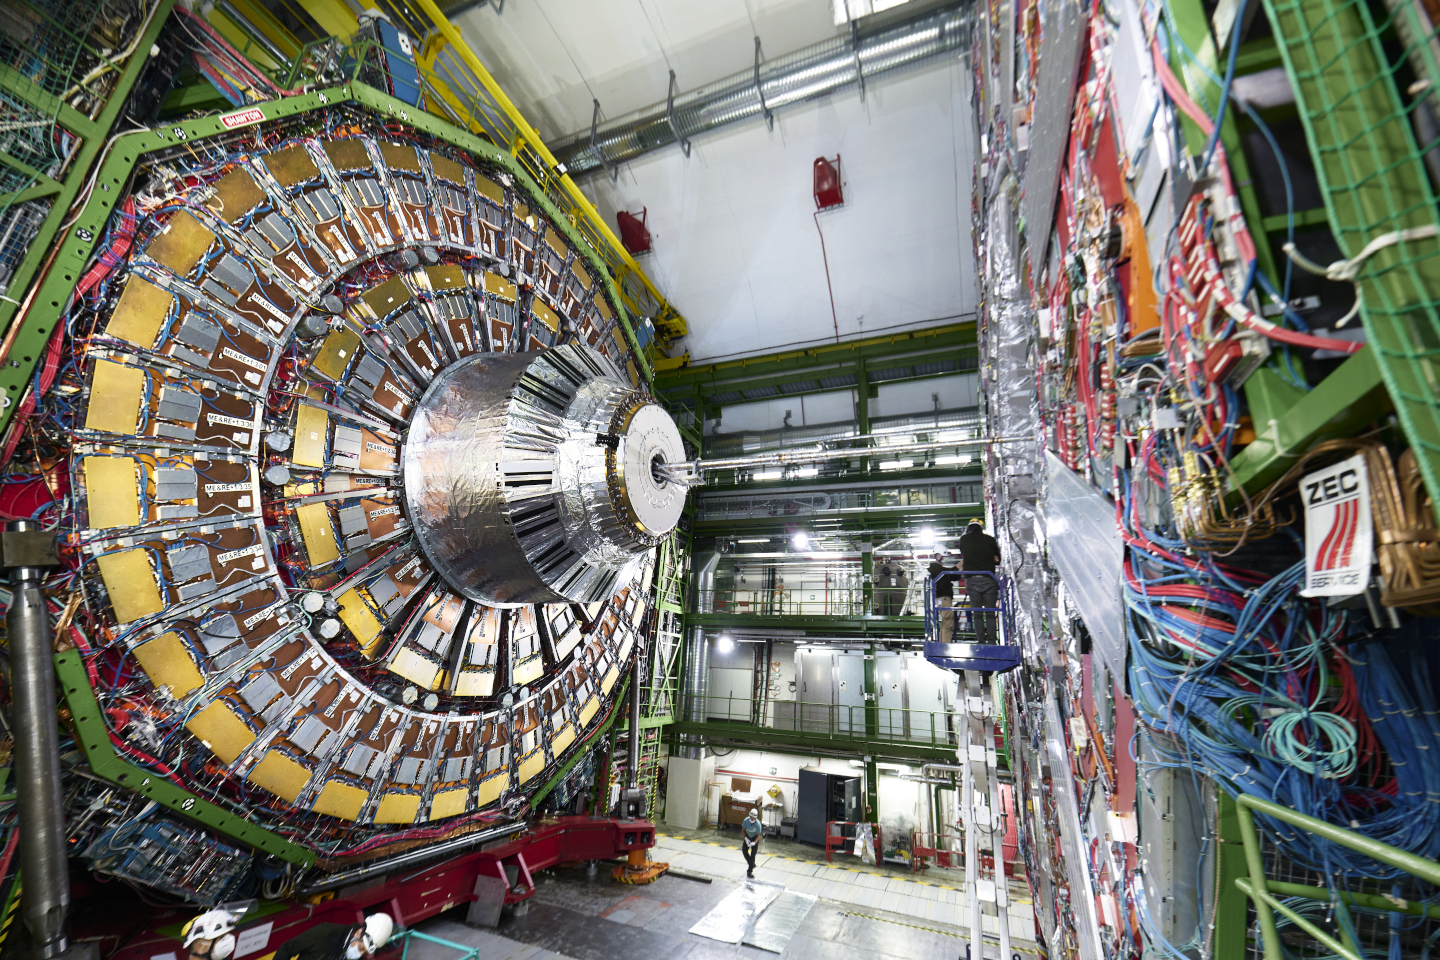 Laboratorium Fizyki CERN odkryło trzy nowe „egzotyczne cząstki”